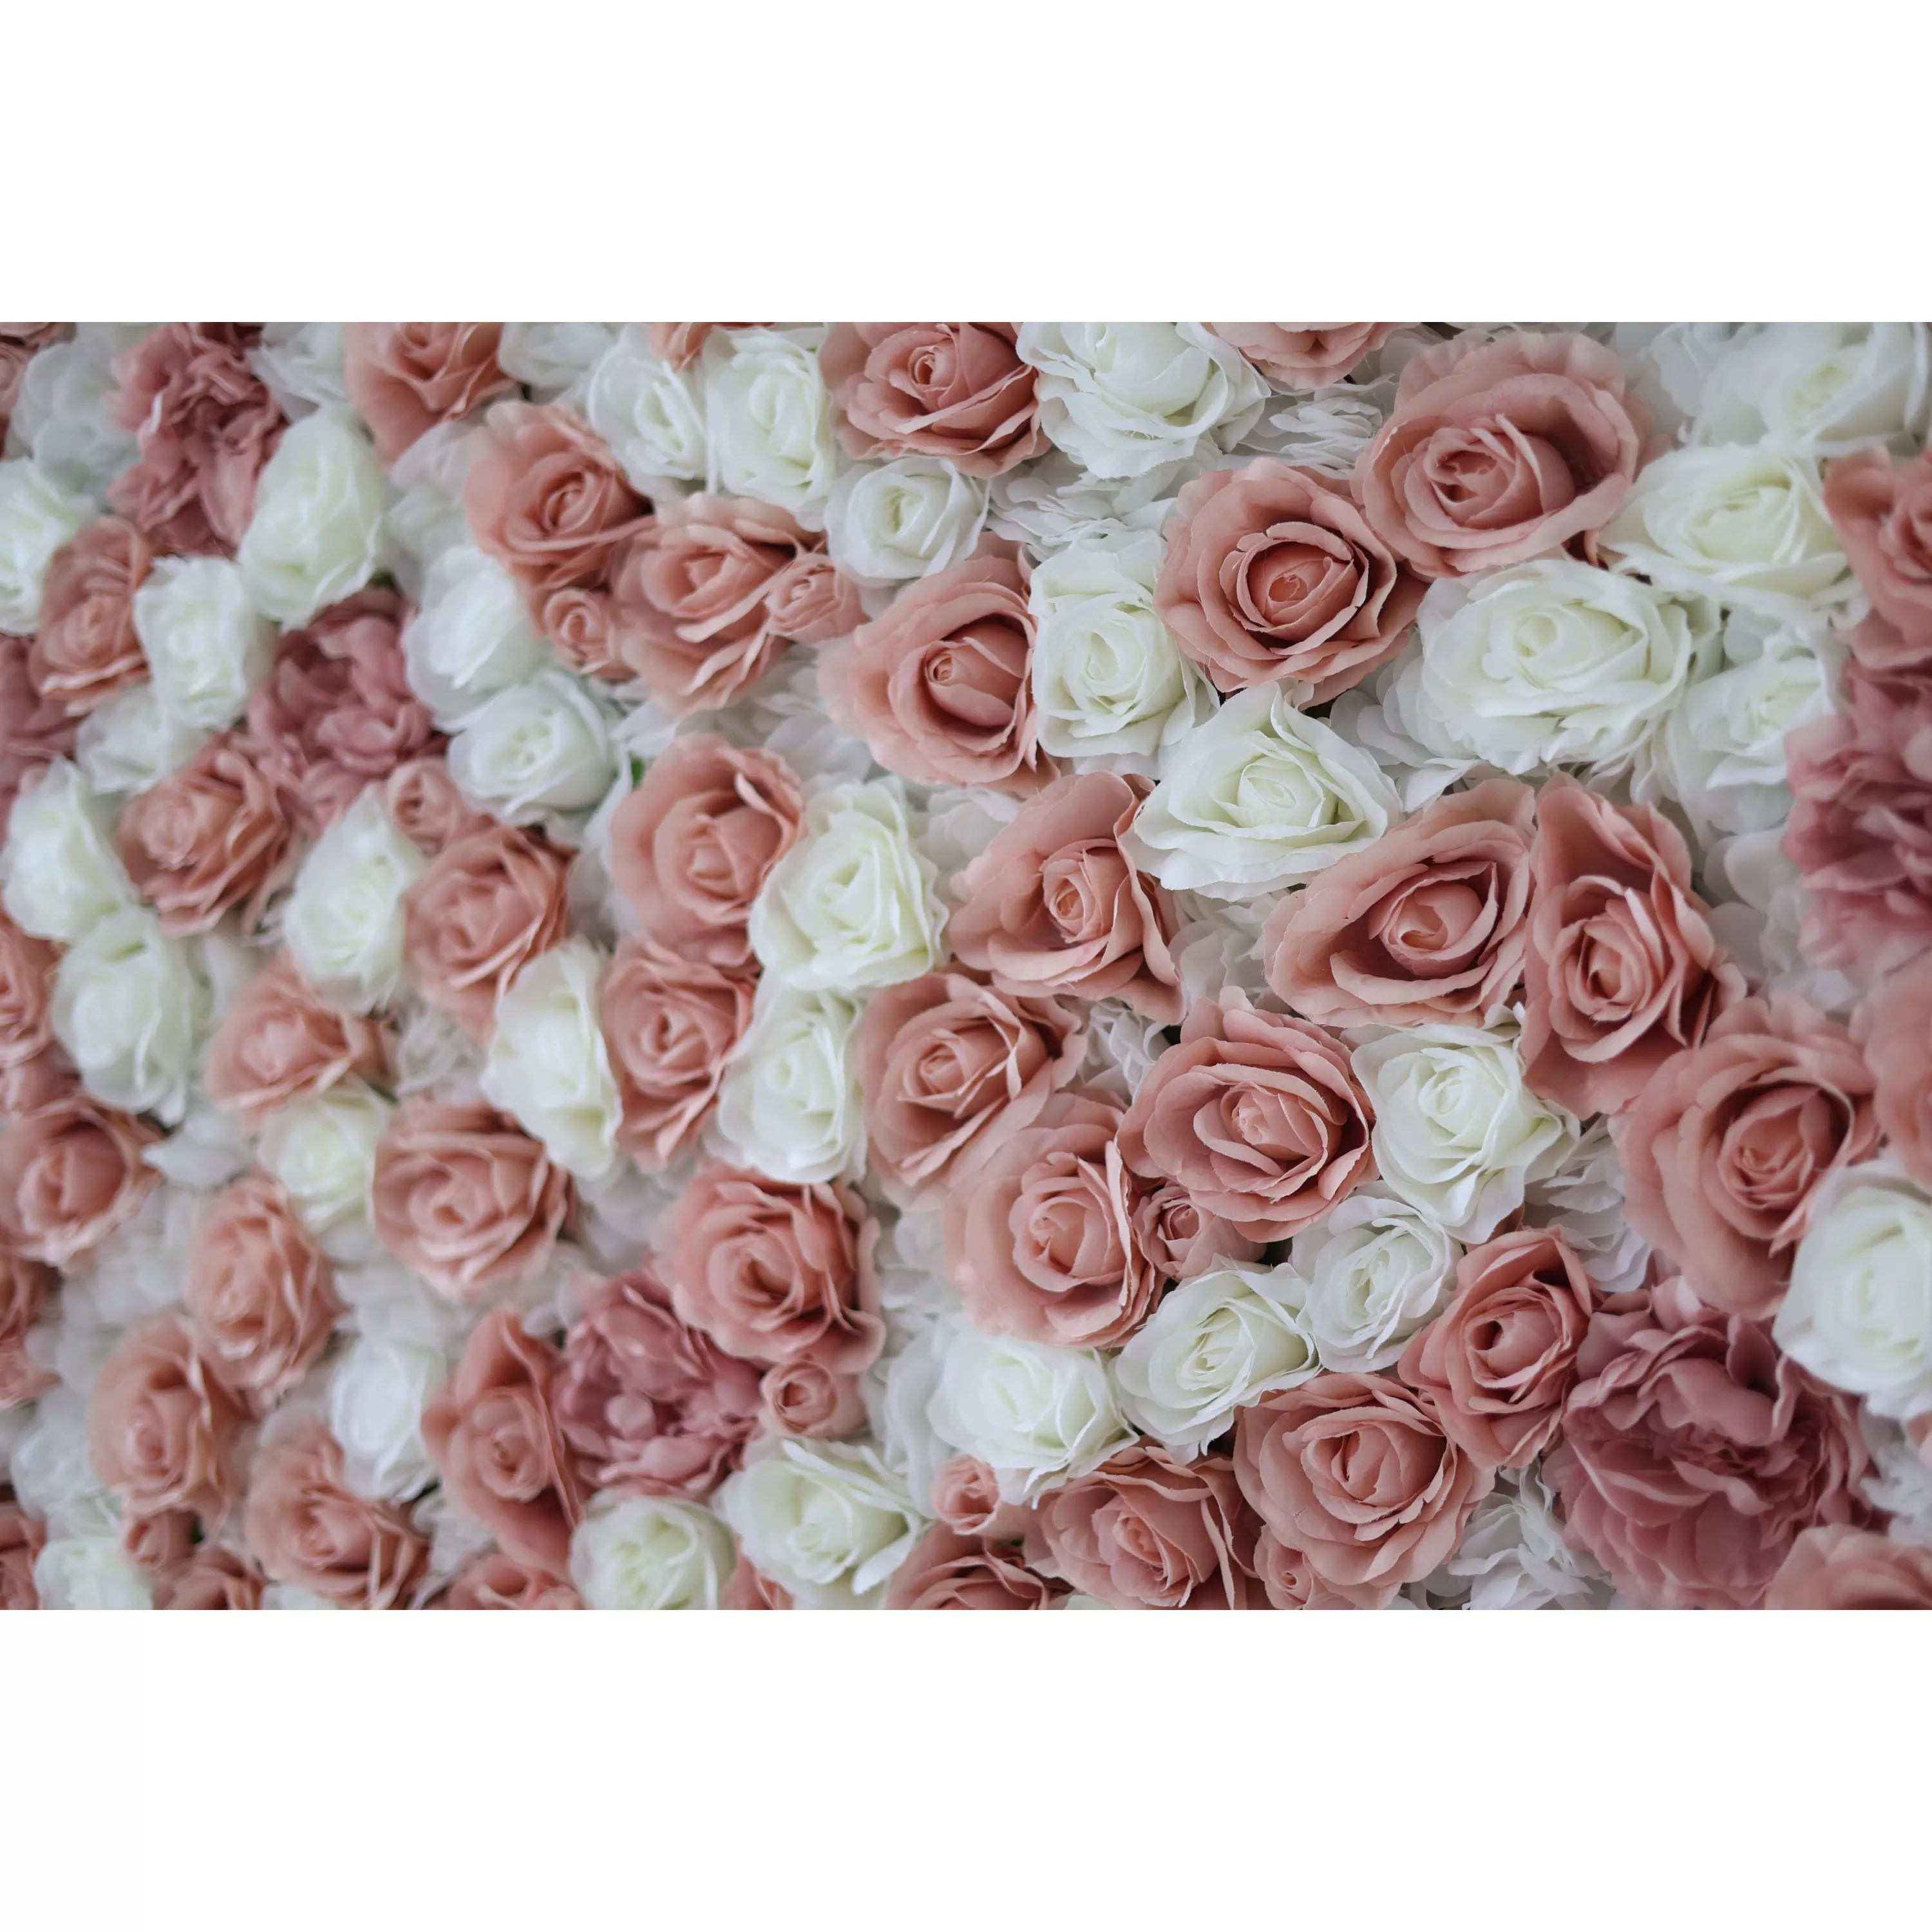 ValarFlowers Toile de fond murale florale artificielle : Rosy Radiance – Une danse délicate de roses roses et blanches - VF-277